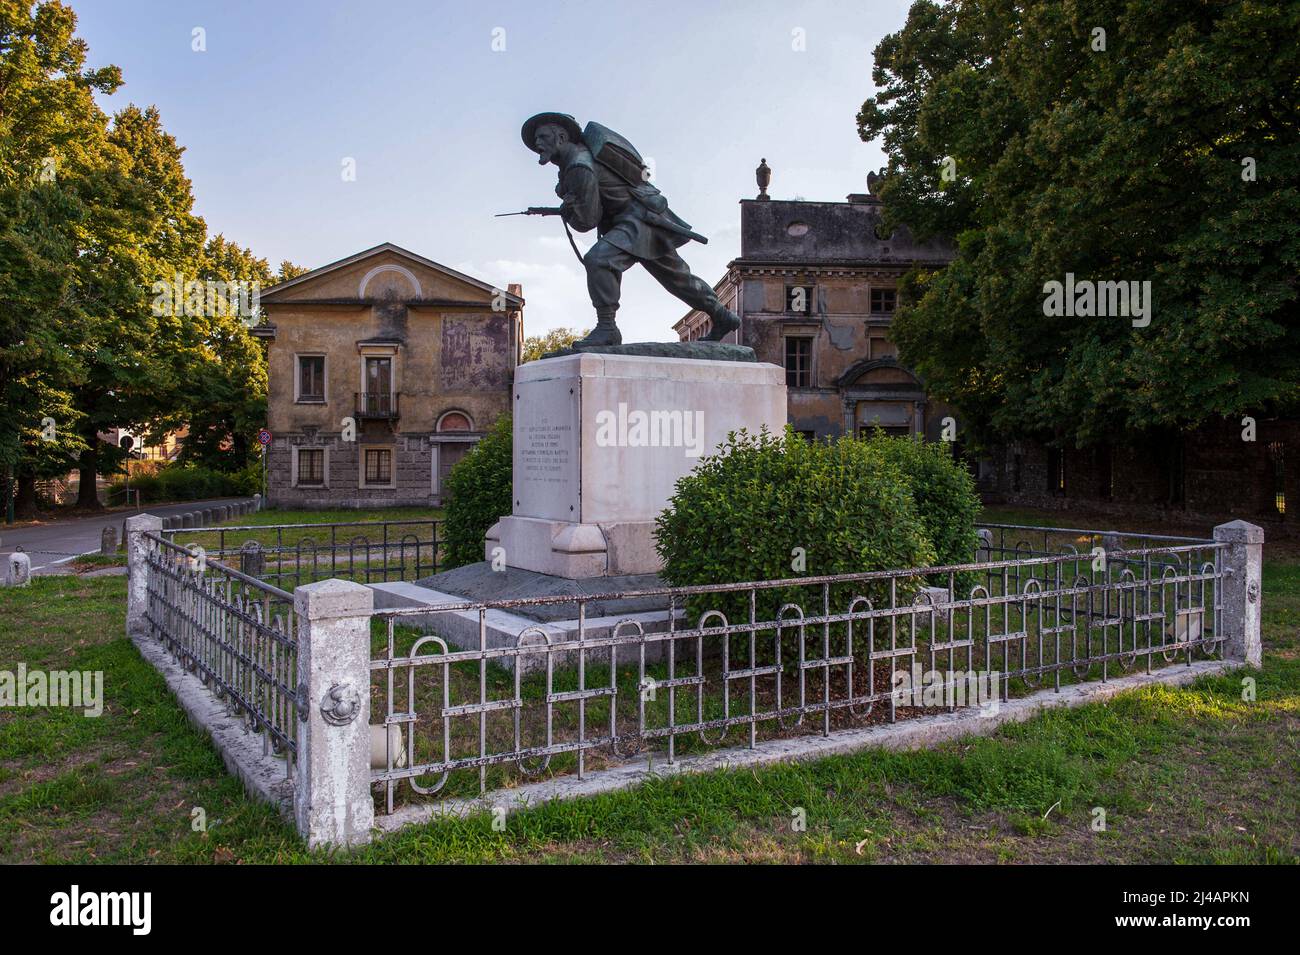 Goito, Italiy 22/08/2015: monumento in memoria della vittoria, contro gli austriaci, dei bersaglieri comandati dal generale La Marmora nell'aprile del 1848. ©Andrea Sabbadini Stock Photo